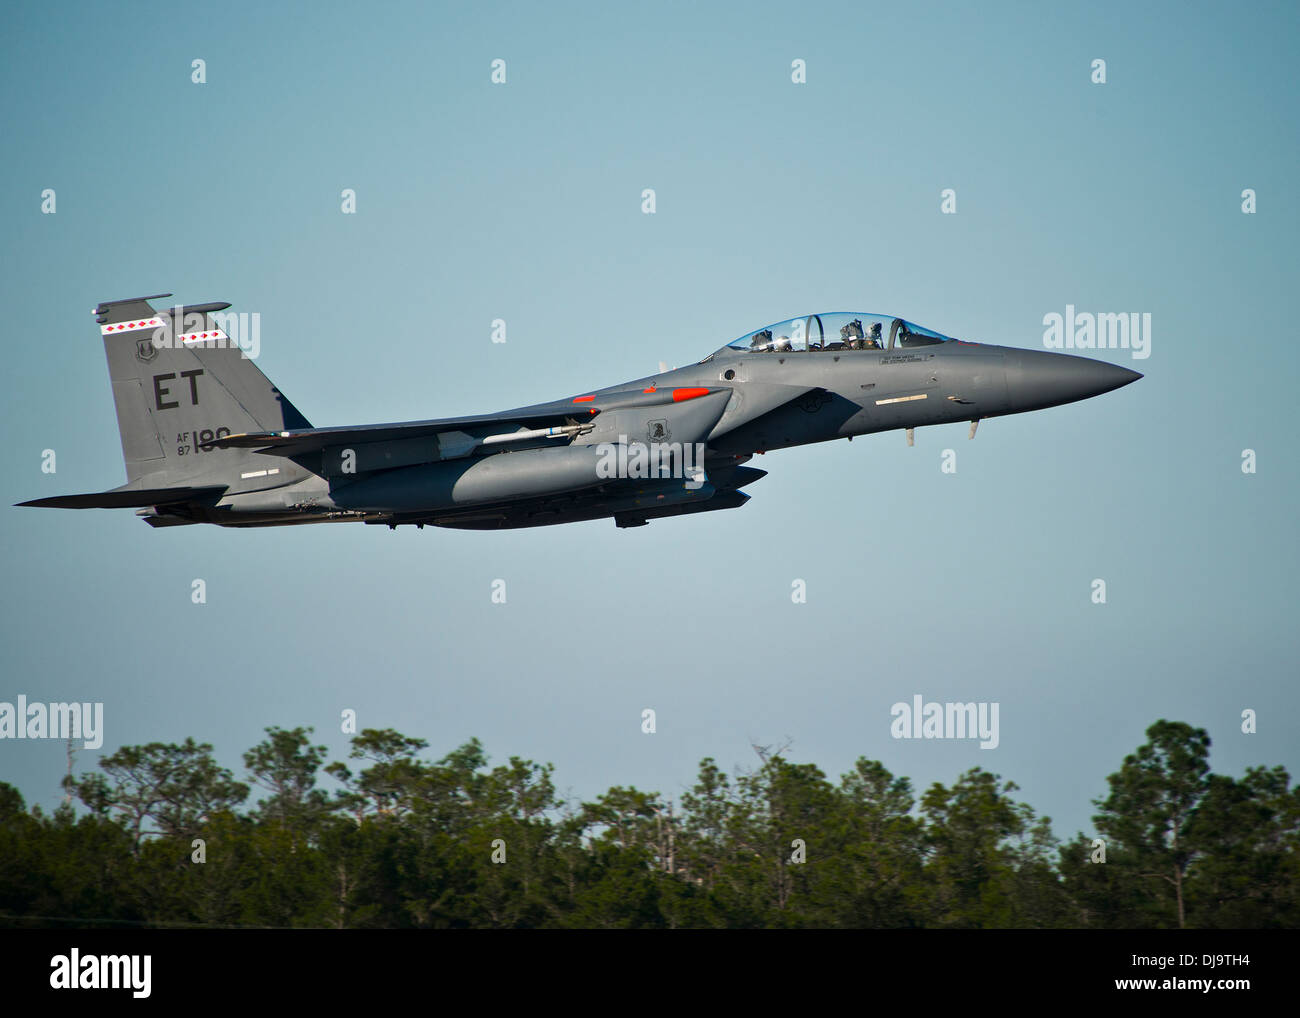 Eine f-15 aus der 40. Flight Test Squadron zieht für einen Training-Ausfall von Eglin Air Force Base, Florida 40. FTS ist verantwortlich für Entwicklungsstörungen Flugerprobung für f-15, f-16 s und A-10s für die 96. Test-Flügel. Stockfoto